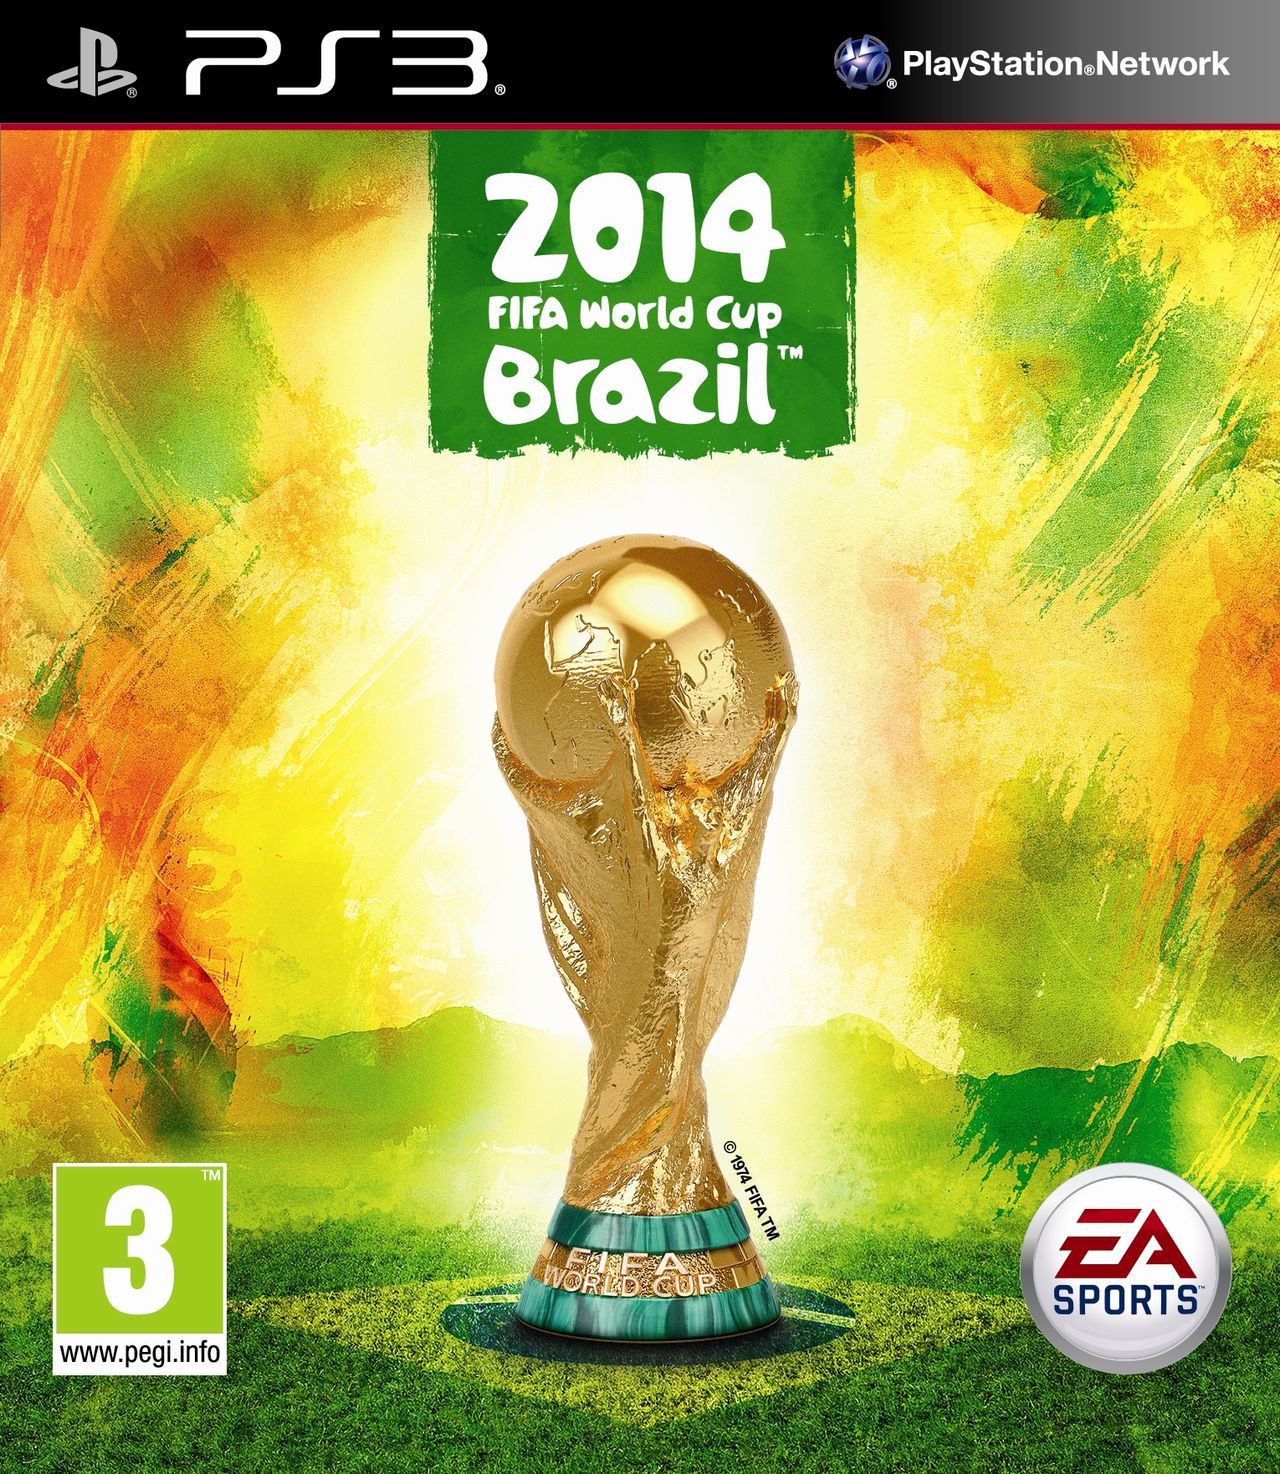 Copa Mundial de la FIFA 2014